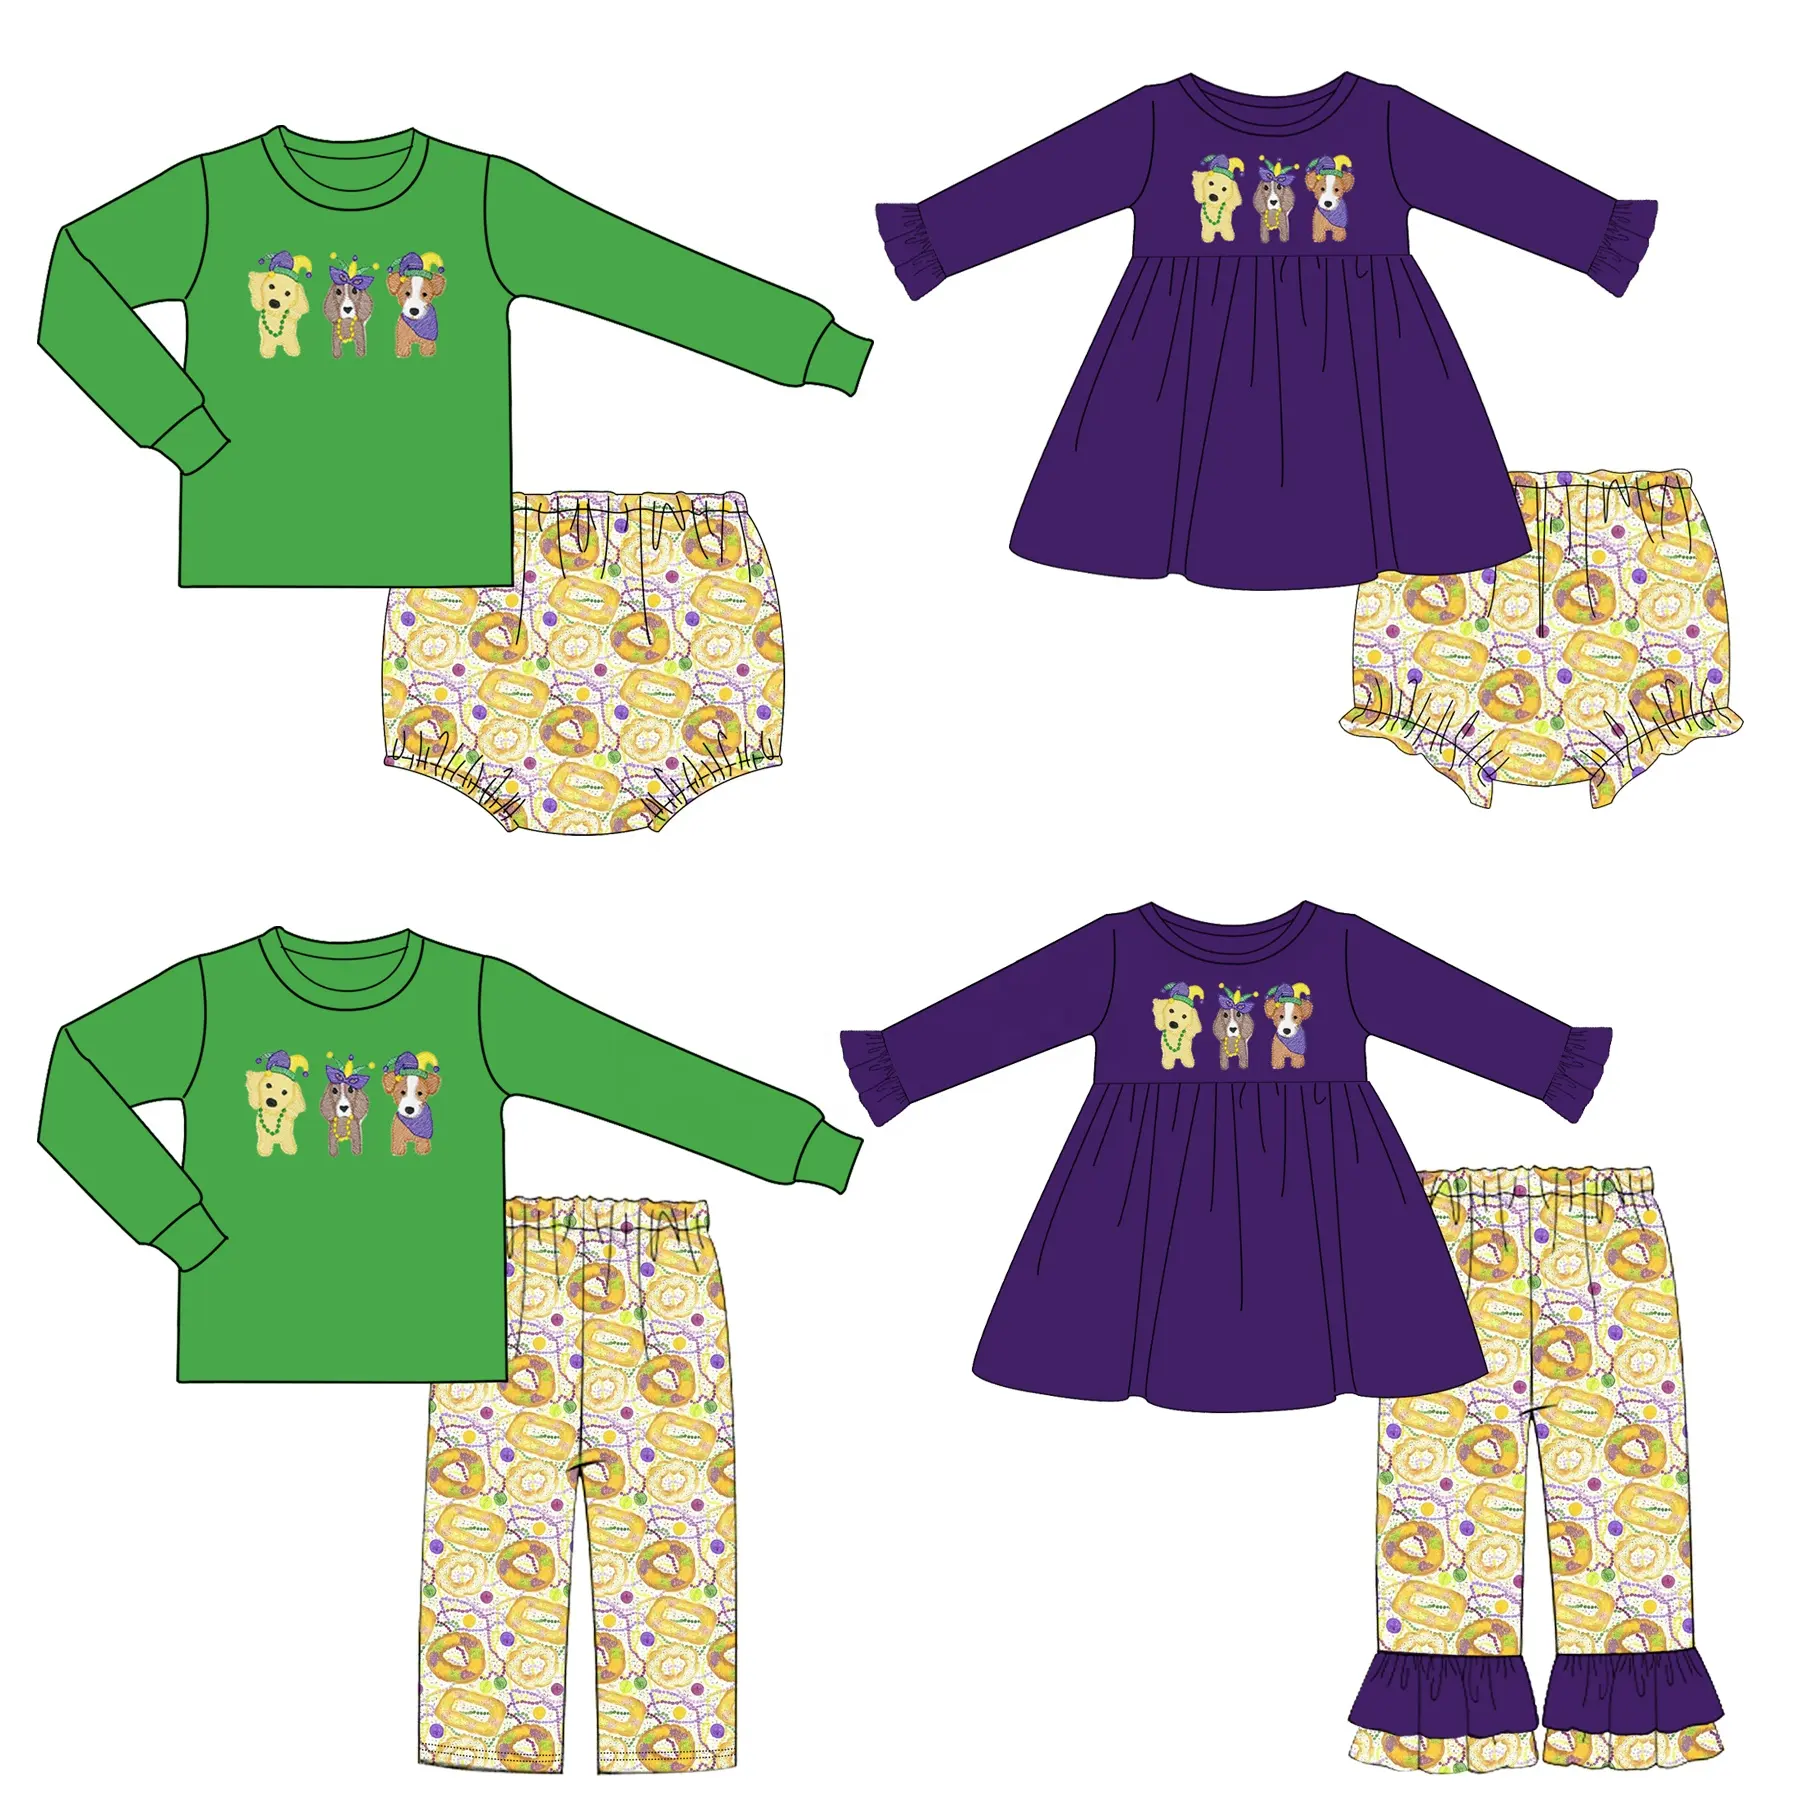 Atacado de alta qualidade Kids Clothing Sets Primavera Baby Boys Boutique Roupas Mardi Gras Tops e Calças Outfits